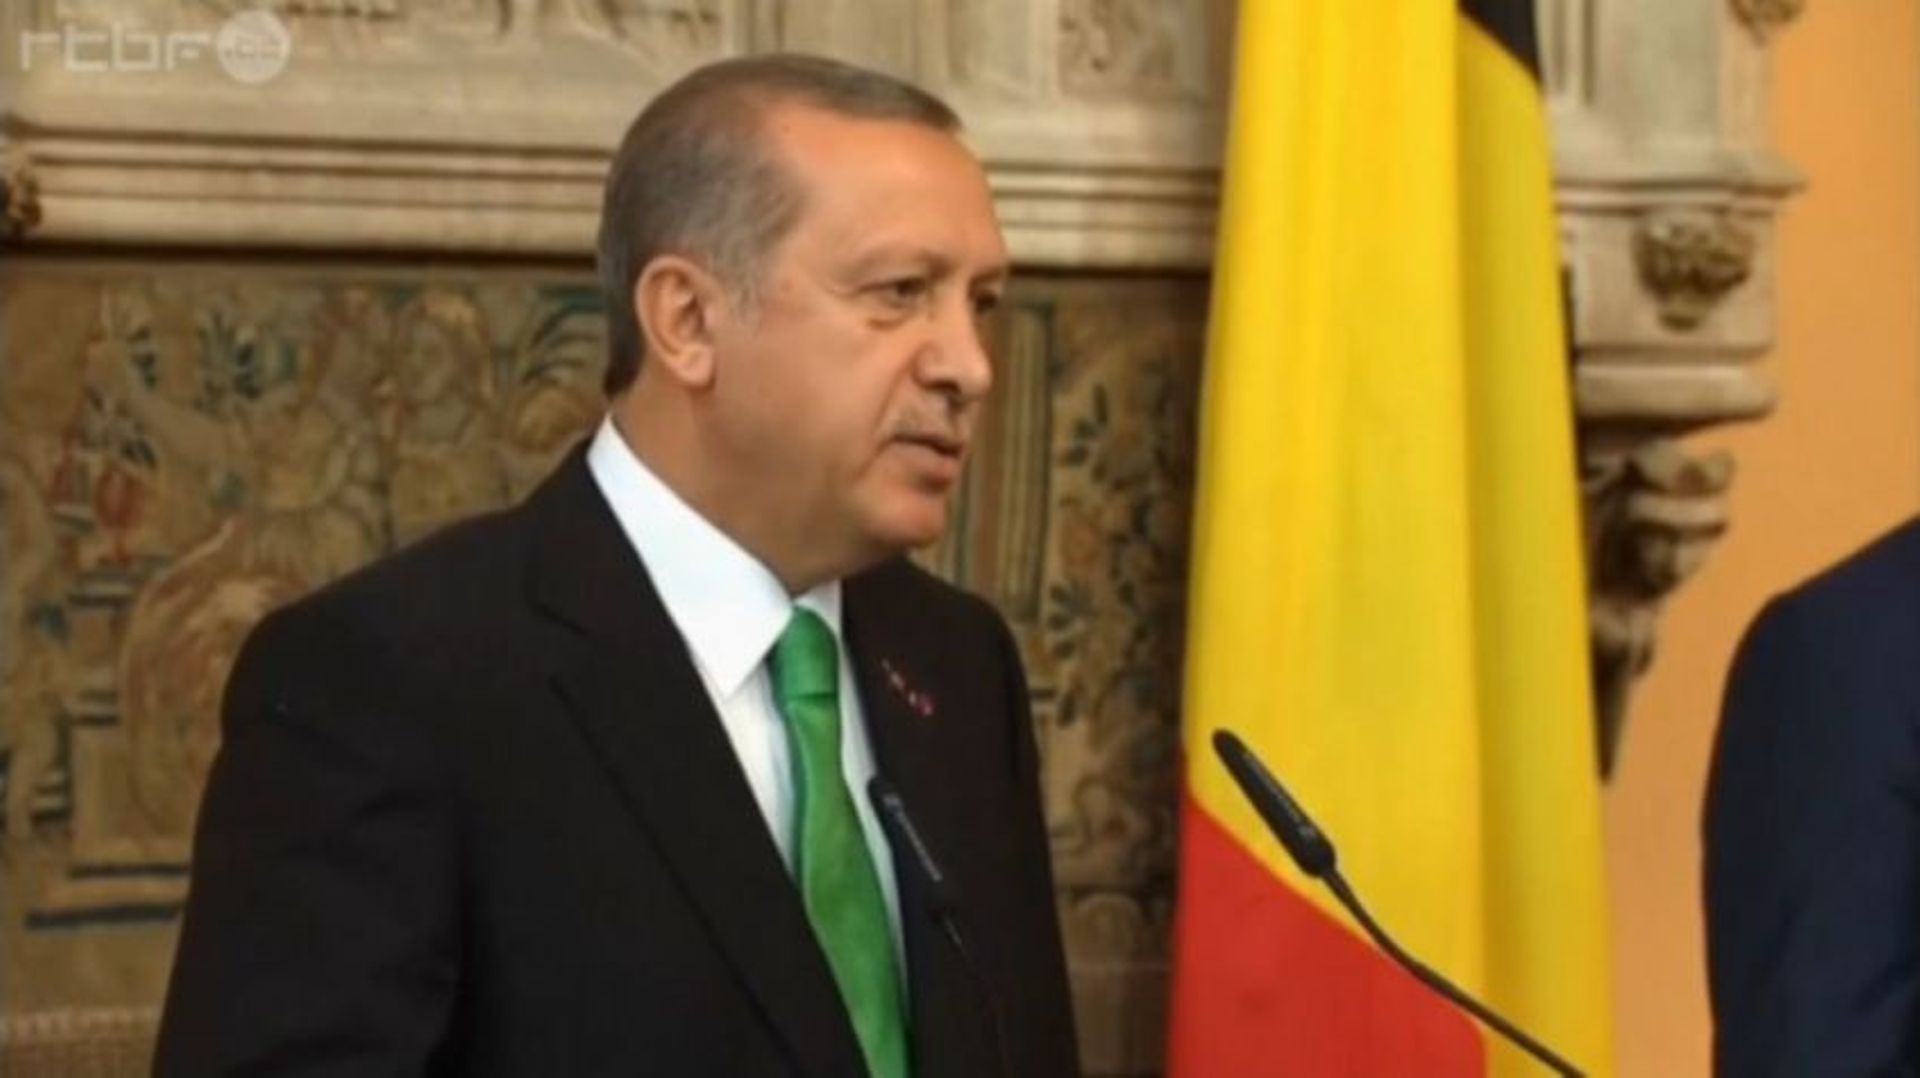 Le président turc Erdogan est en visite d’État en Belgique